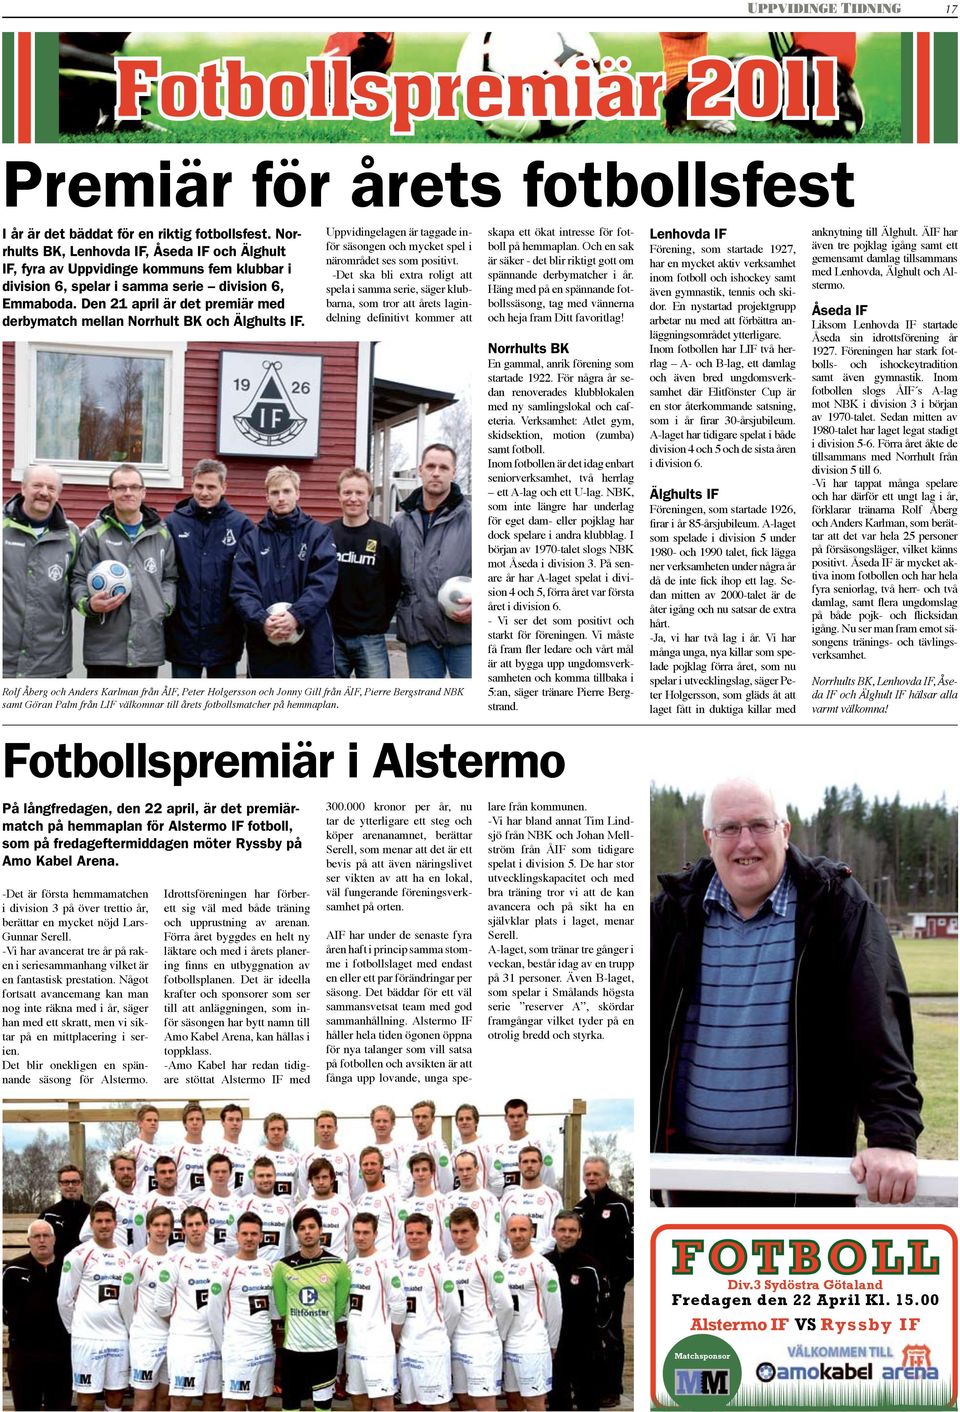 Den 21 april är det premiär med derbymatch mellan Norrhult BK och Älghults IF. Uppvidingelagen är taggade inför säsongen och mycket spel i närområdet ses som positivt.